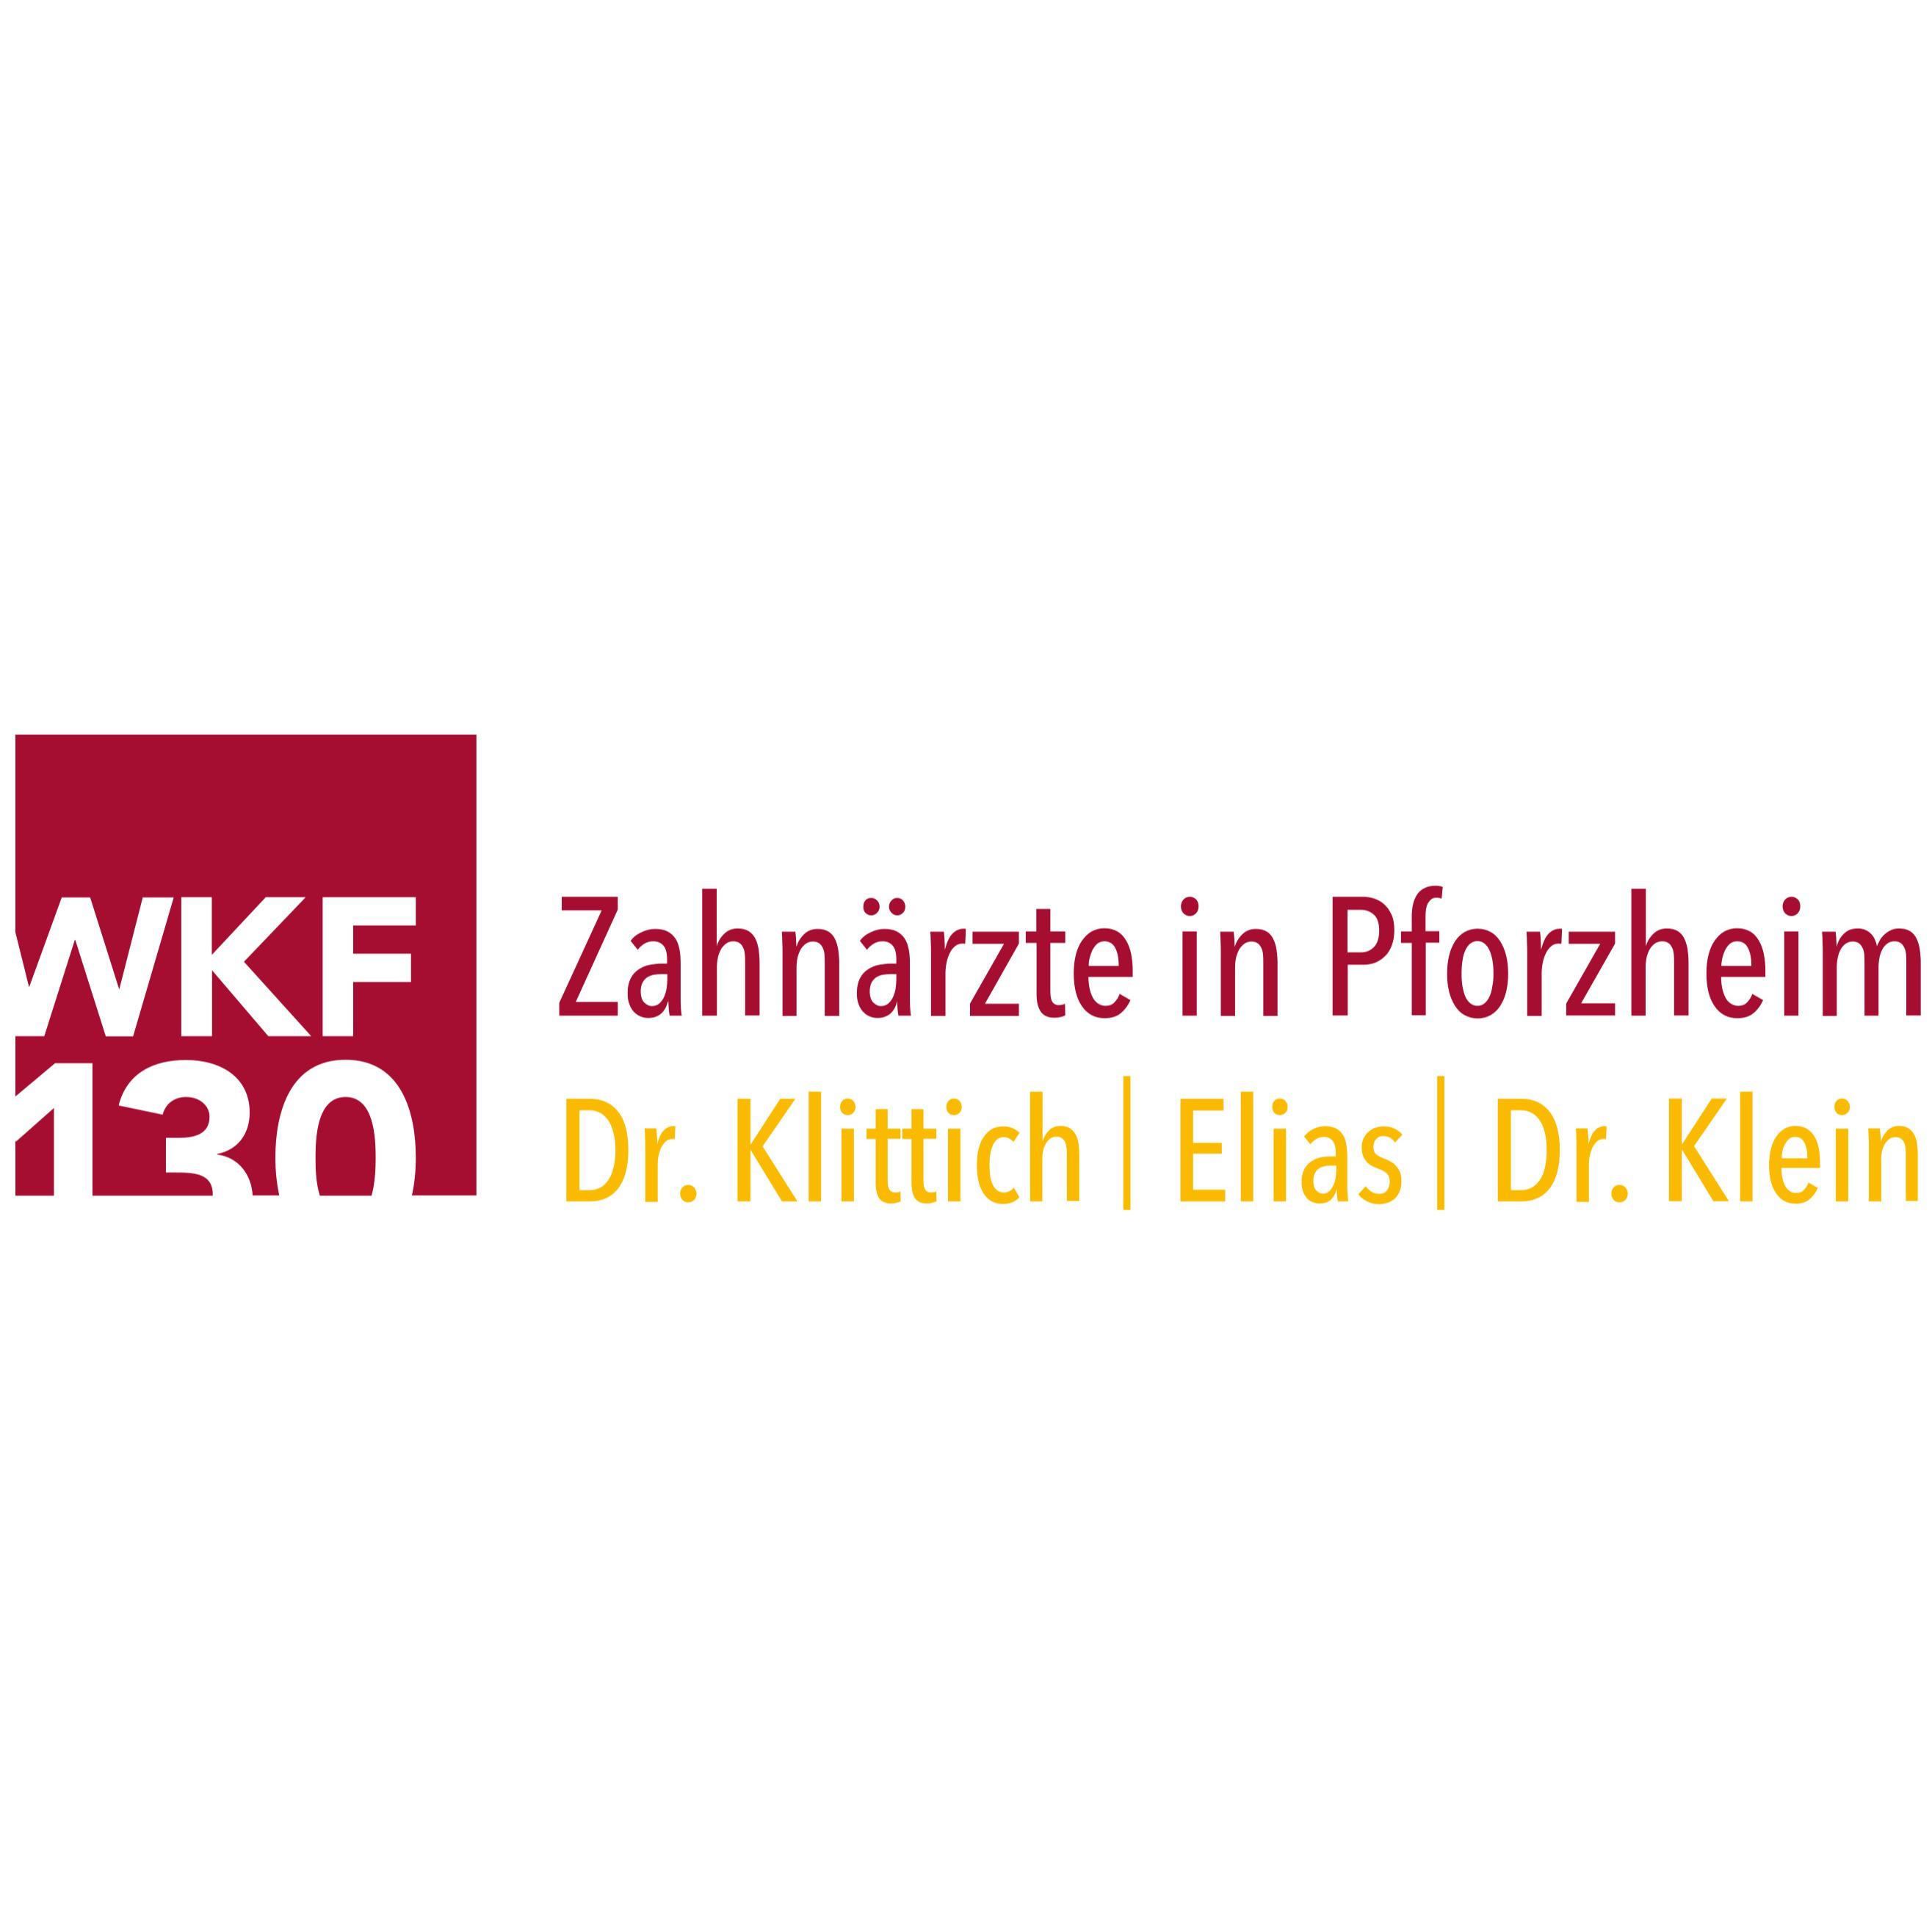 Logo - Zahnärzte in Pforzheim - WKF130